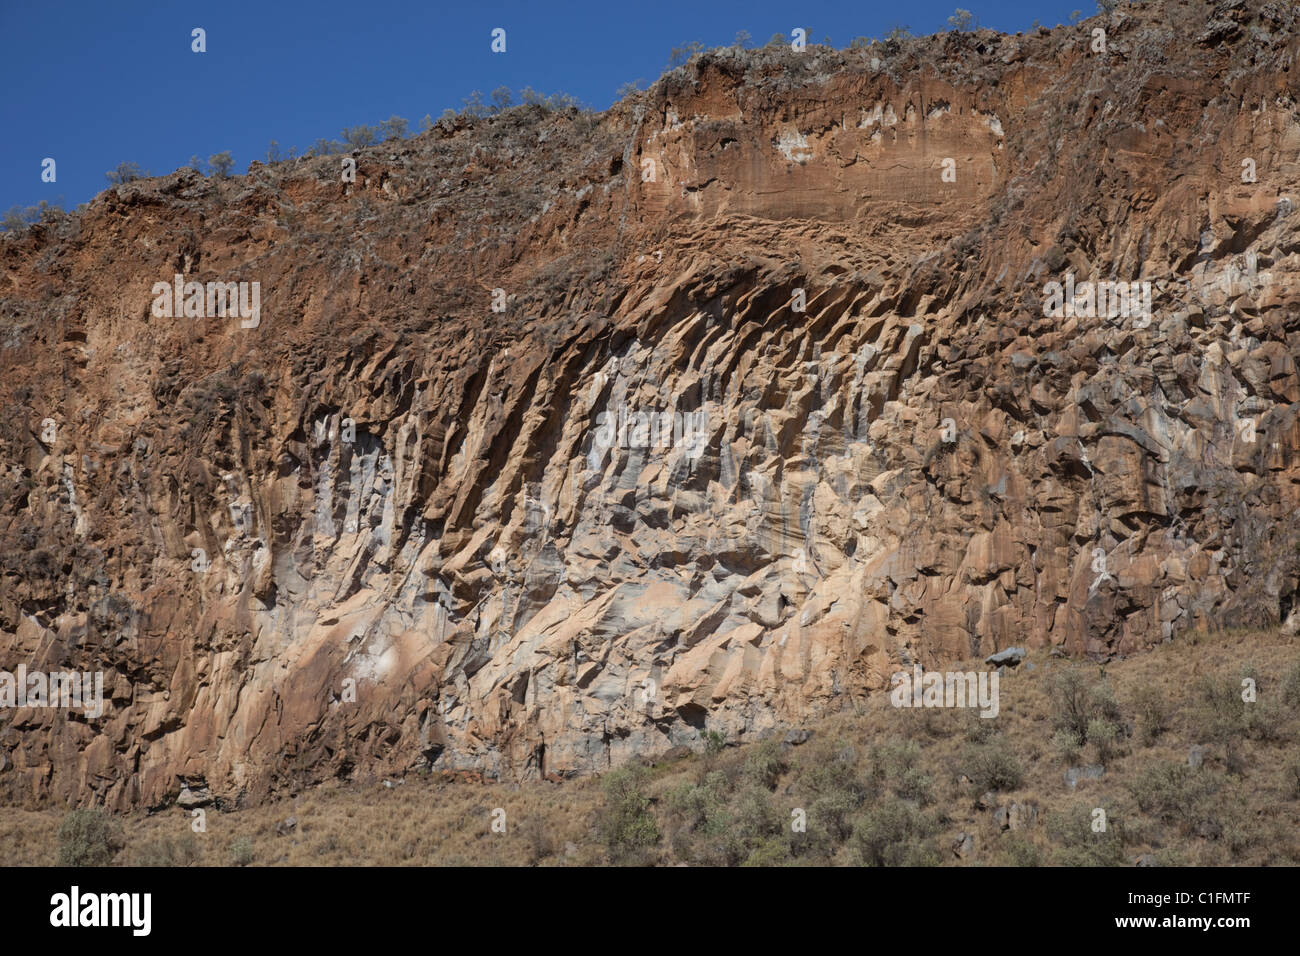 Rock outcrops of columnar basalt Hells Gate Rift Valley Kenya East Africa Stock Photo